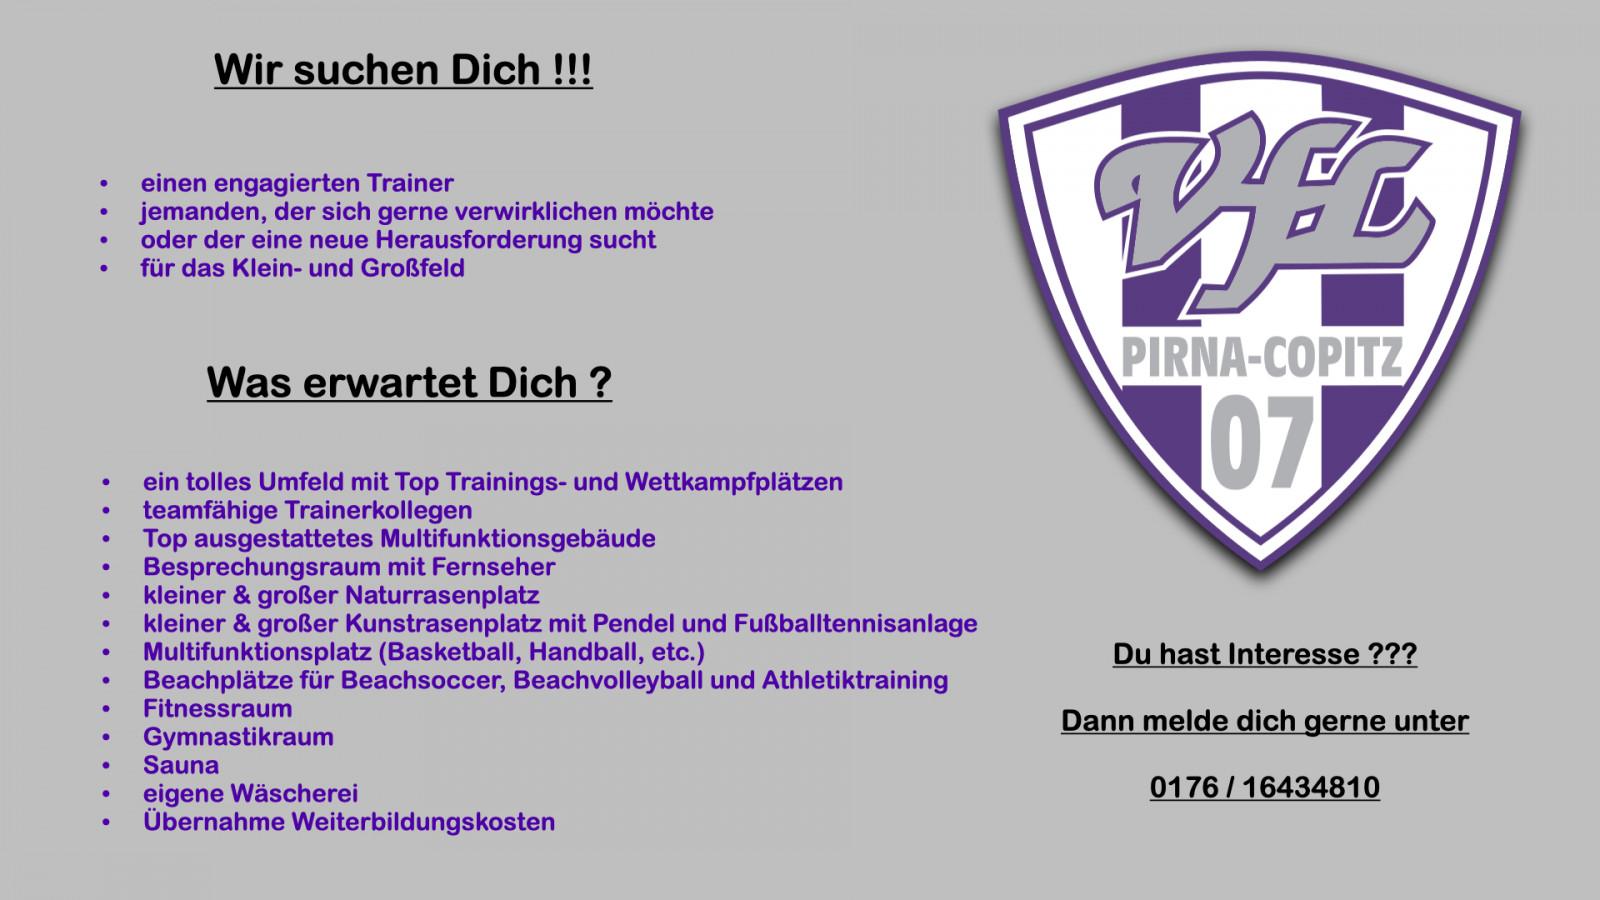 Für das Groß- und Kleinfeld: Der VfL Pirna sucht Nachwuchs-Trainer*innen. Grafik: VfL/tg